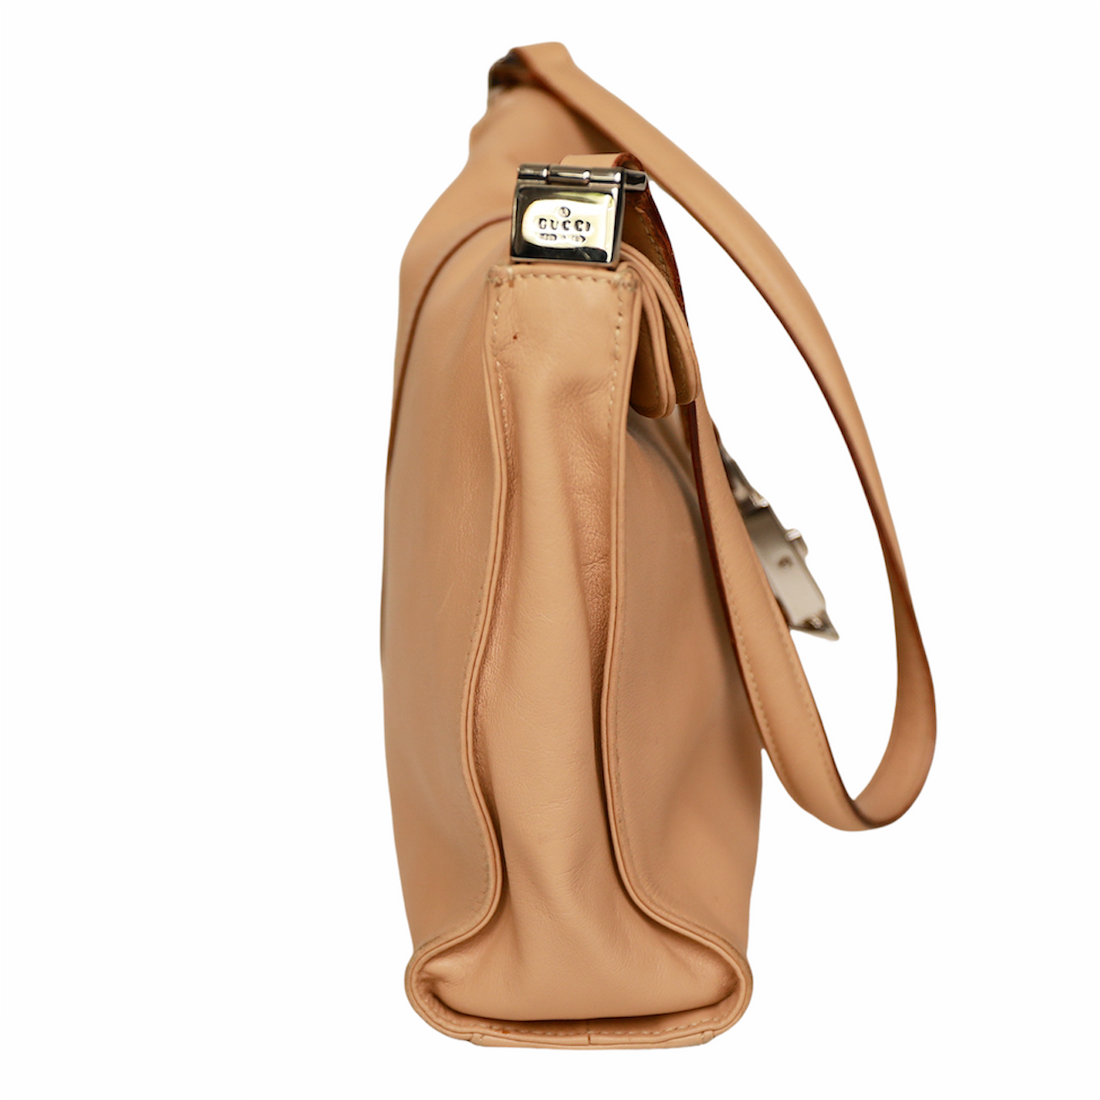 Gucci vintage handbag with signature clasp